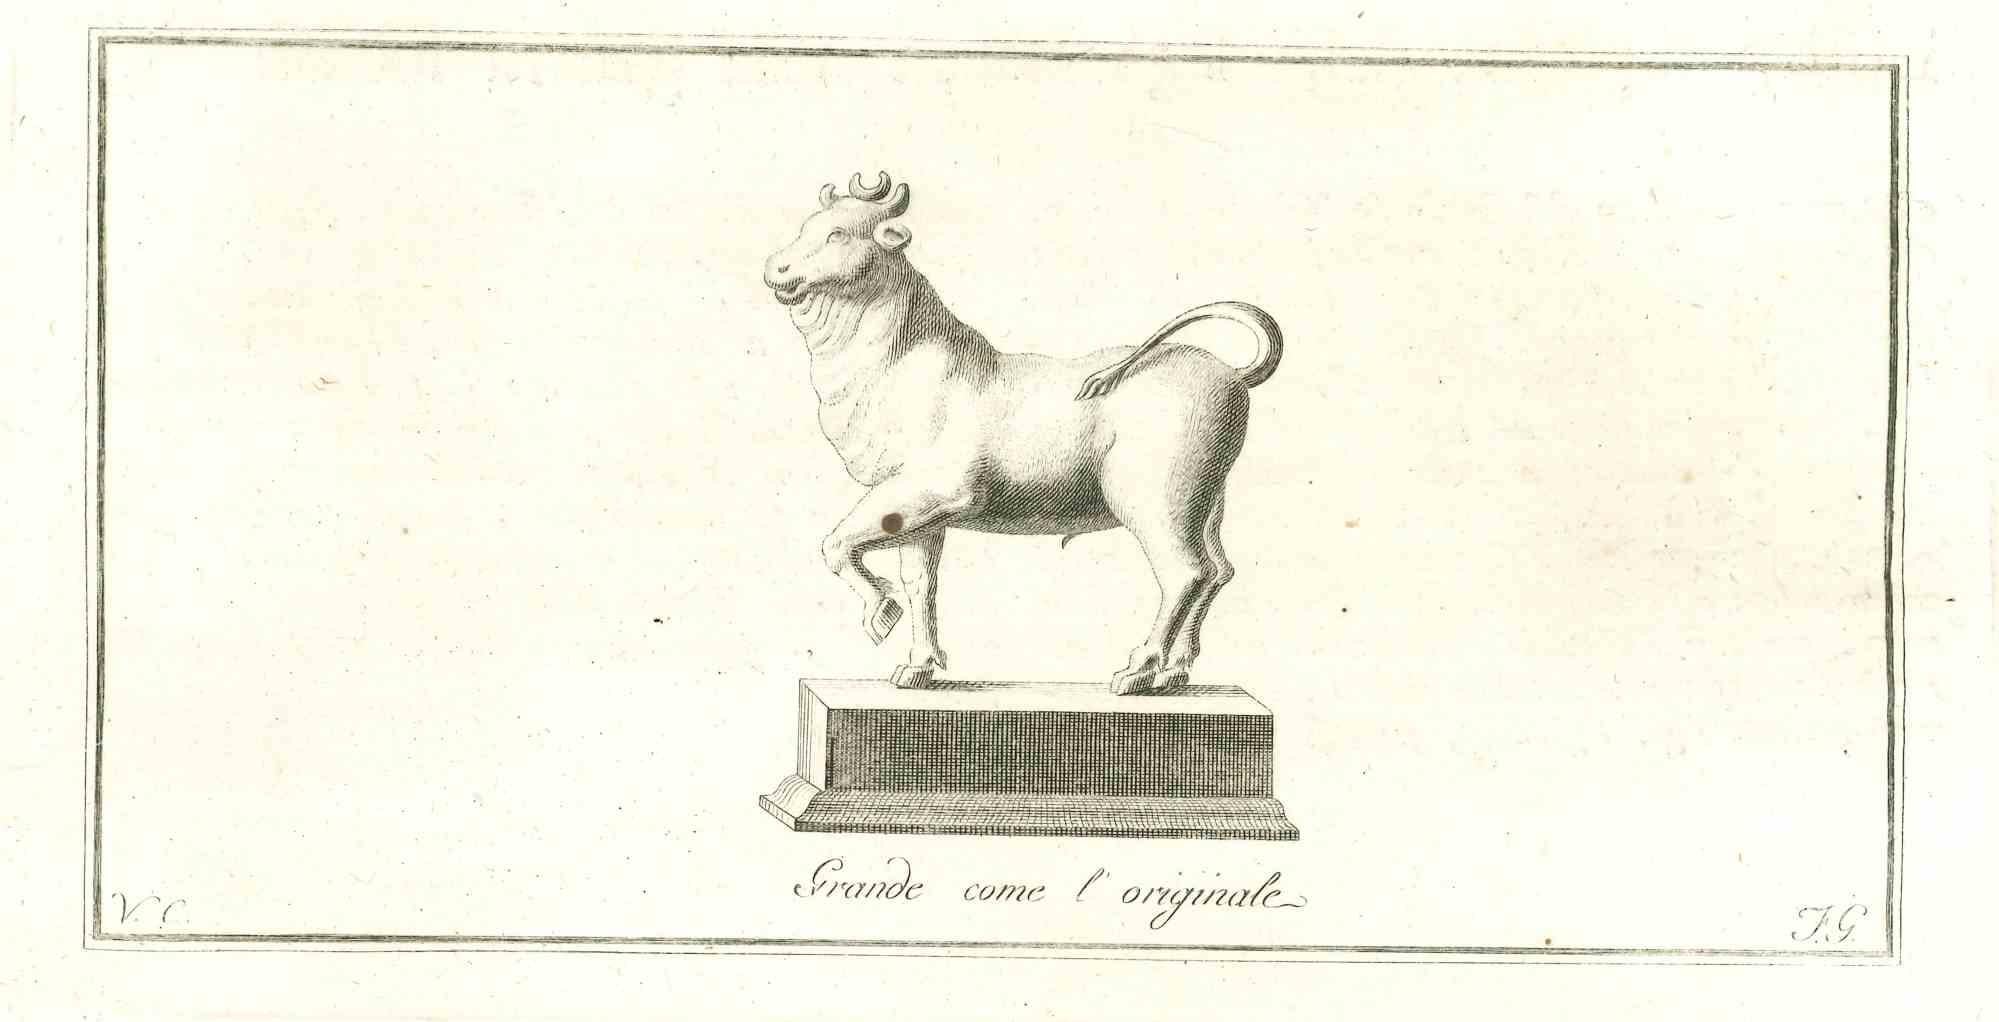 Antike römische Statue, aus der Serie "Antiquitäten von Herculaneum", ist eine Originalradierung auf Papier, die von Vincenzo Campana im 18.
Signiert auf der Platte unten links.
Guter Zustand, aber gealtert.
 
Die Radierung gehört zu der Druckserie